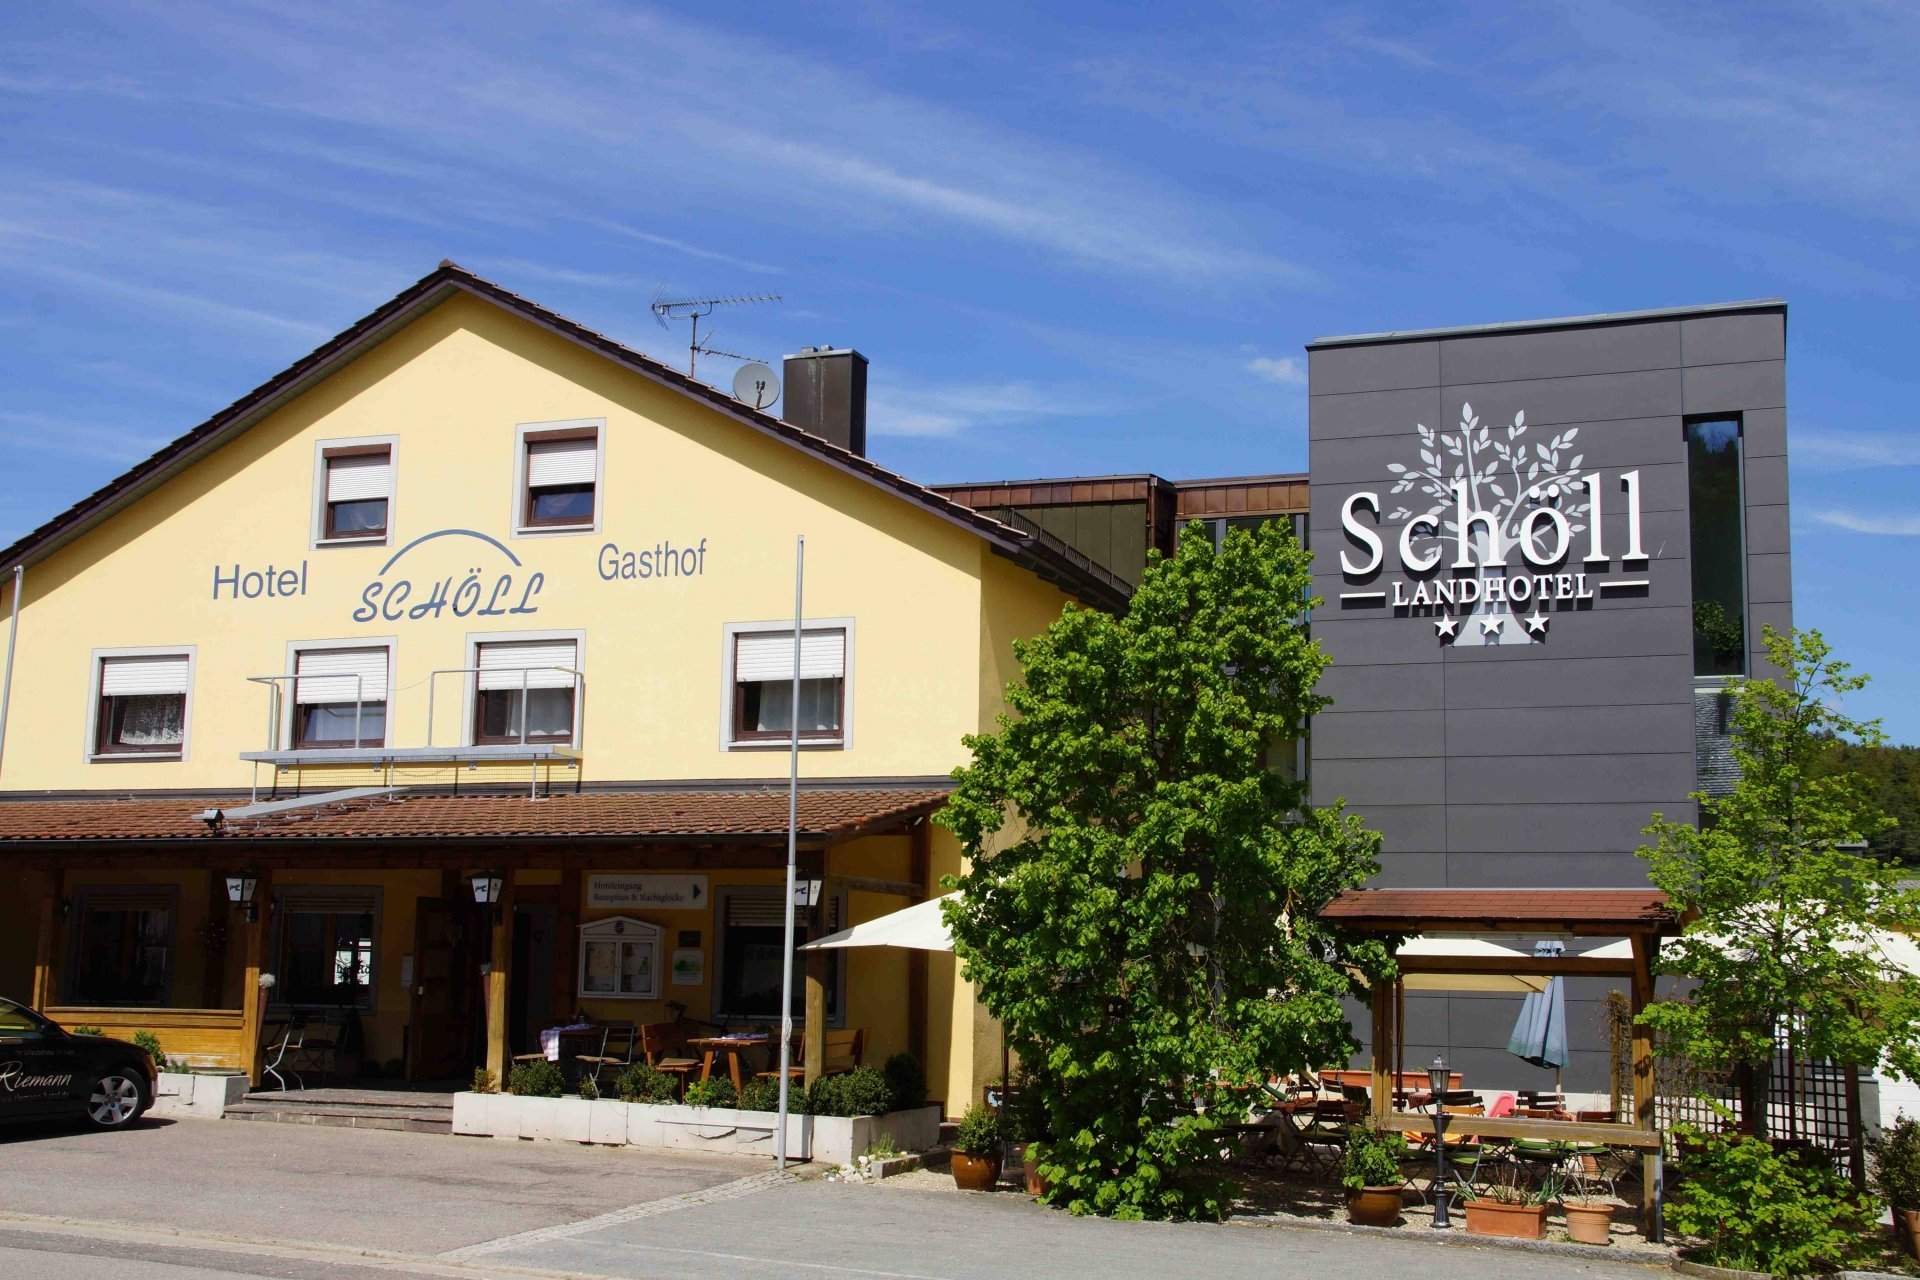 3 Tage Bayerische Auszeit mit Alpaka Wanderung in der Oberpfalz 2 - LandKomforthotel Schöll (3 Sterne) in Parsberg, Bayern inkl. Halbpension